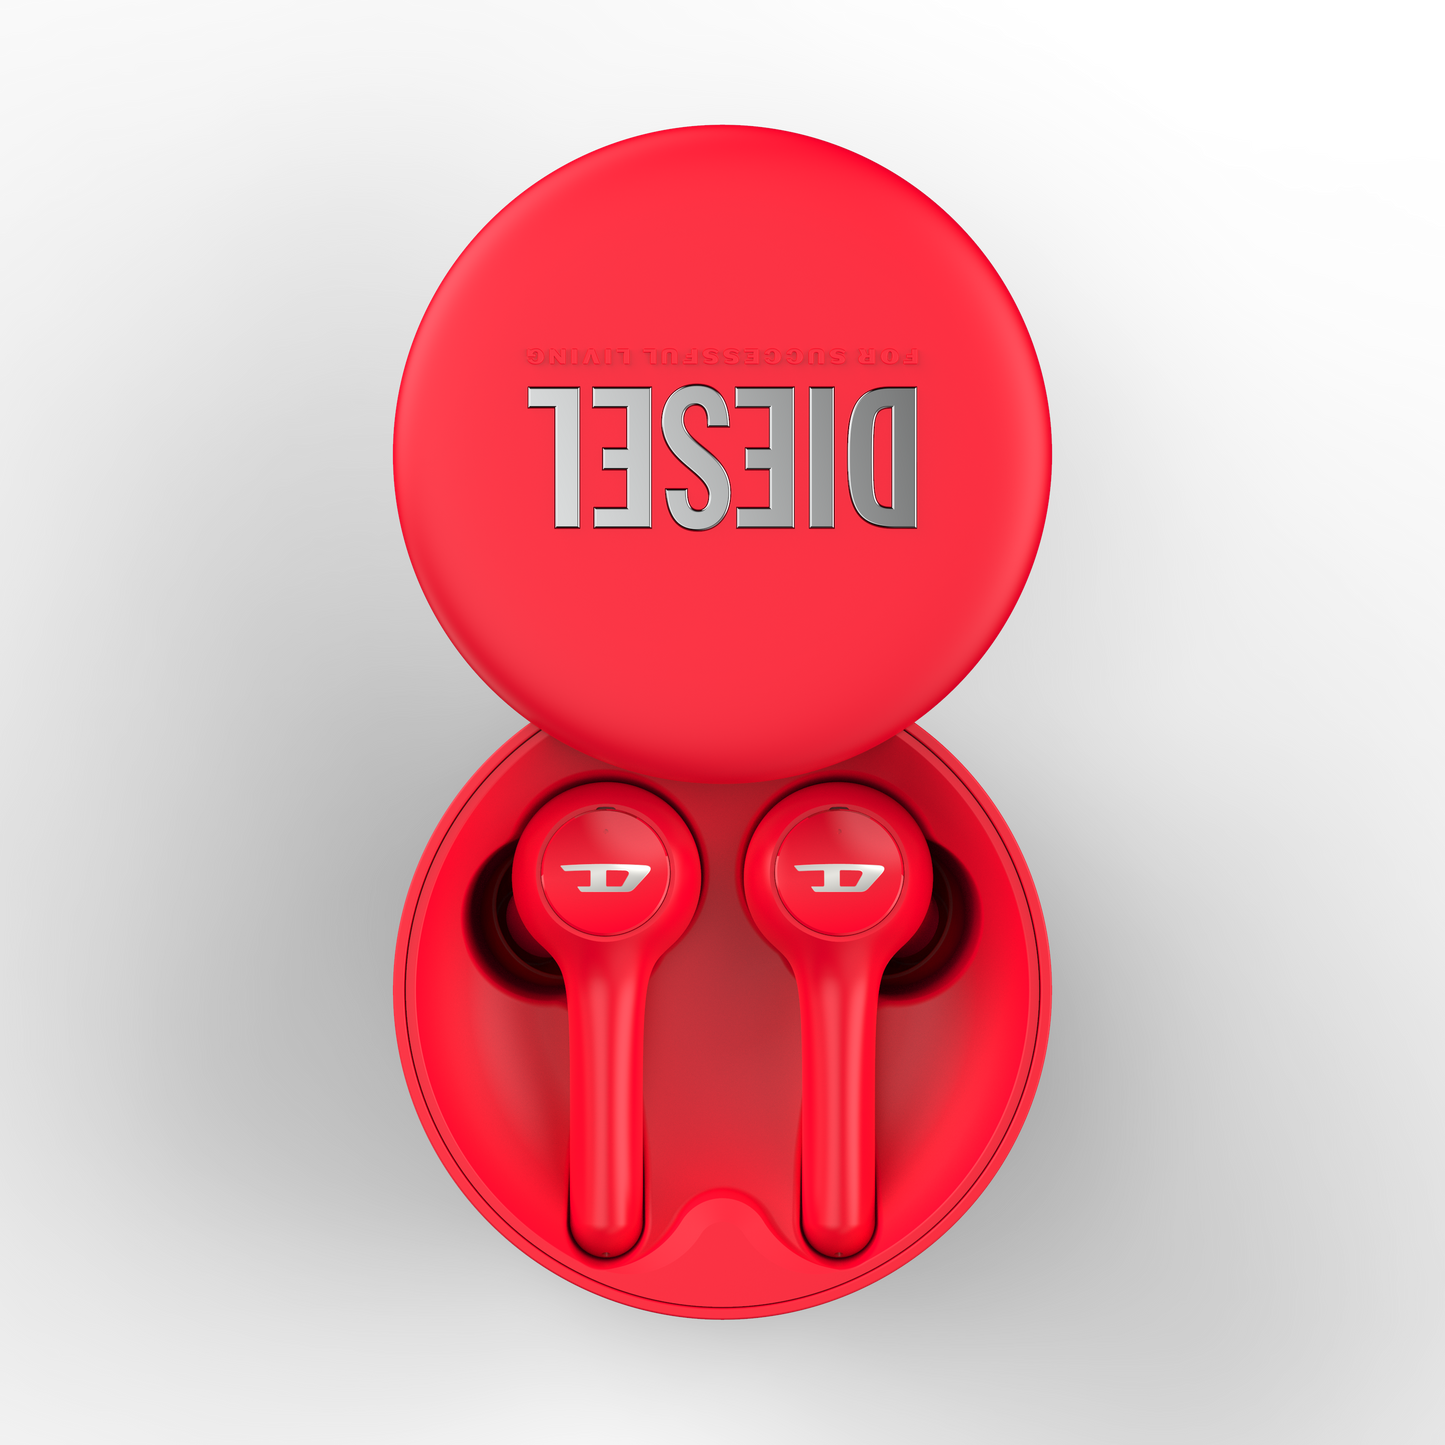 Diesel True Wireless Earbud - Red